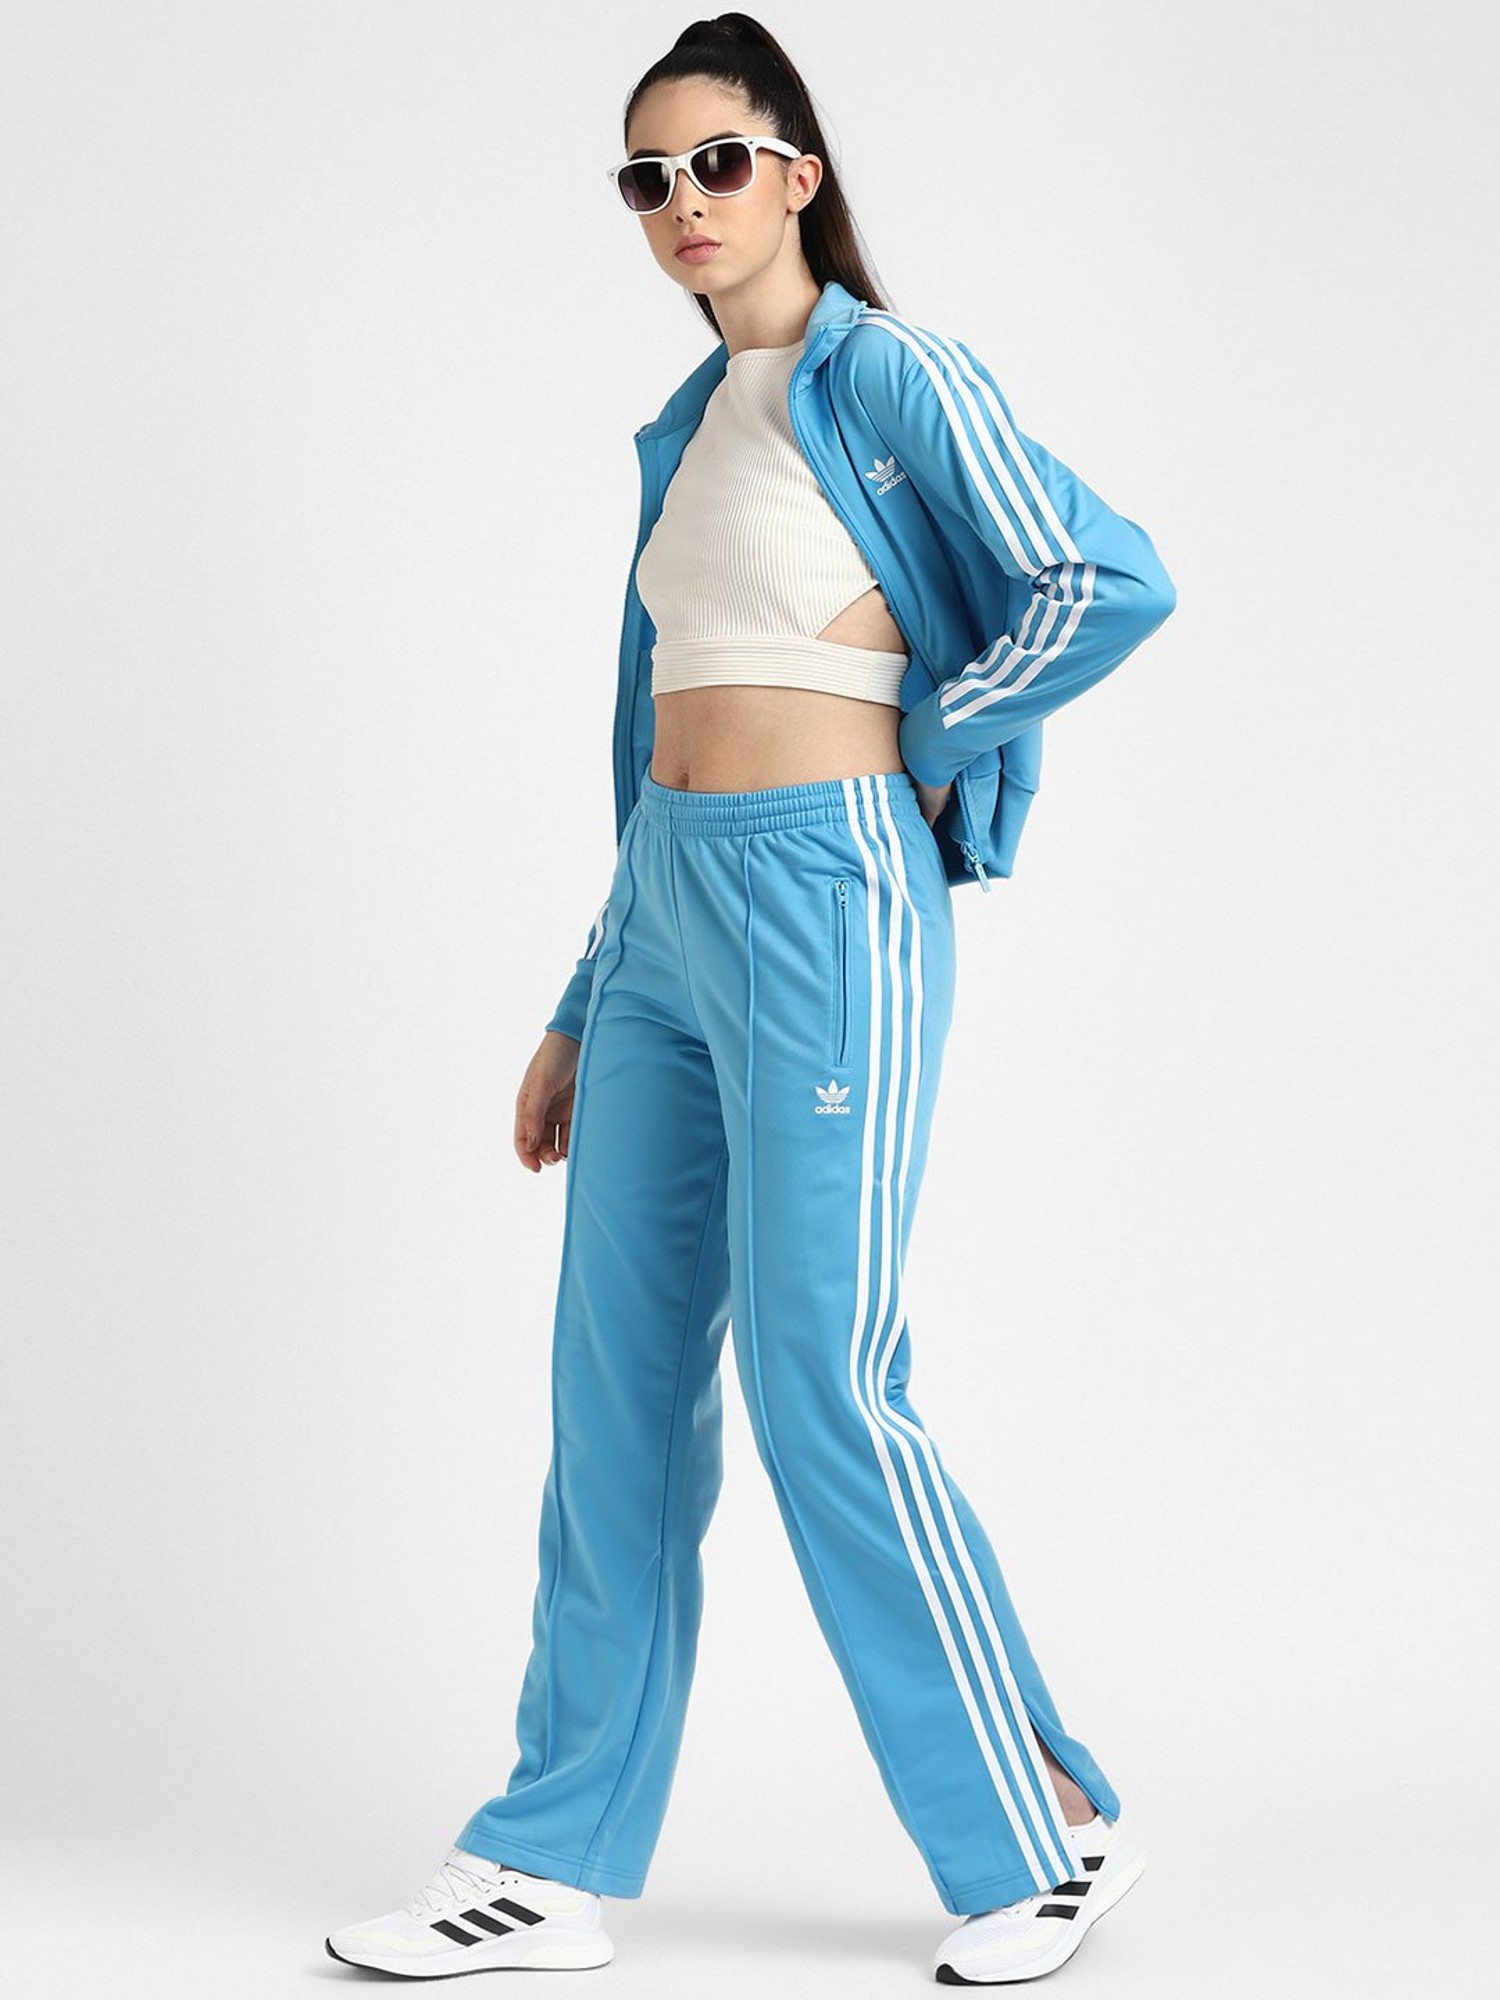 Adidas Originals Firebird Track Pants Crew Blue  80s Casual Classics